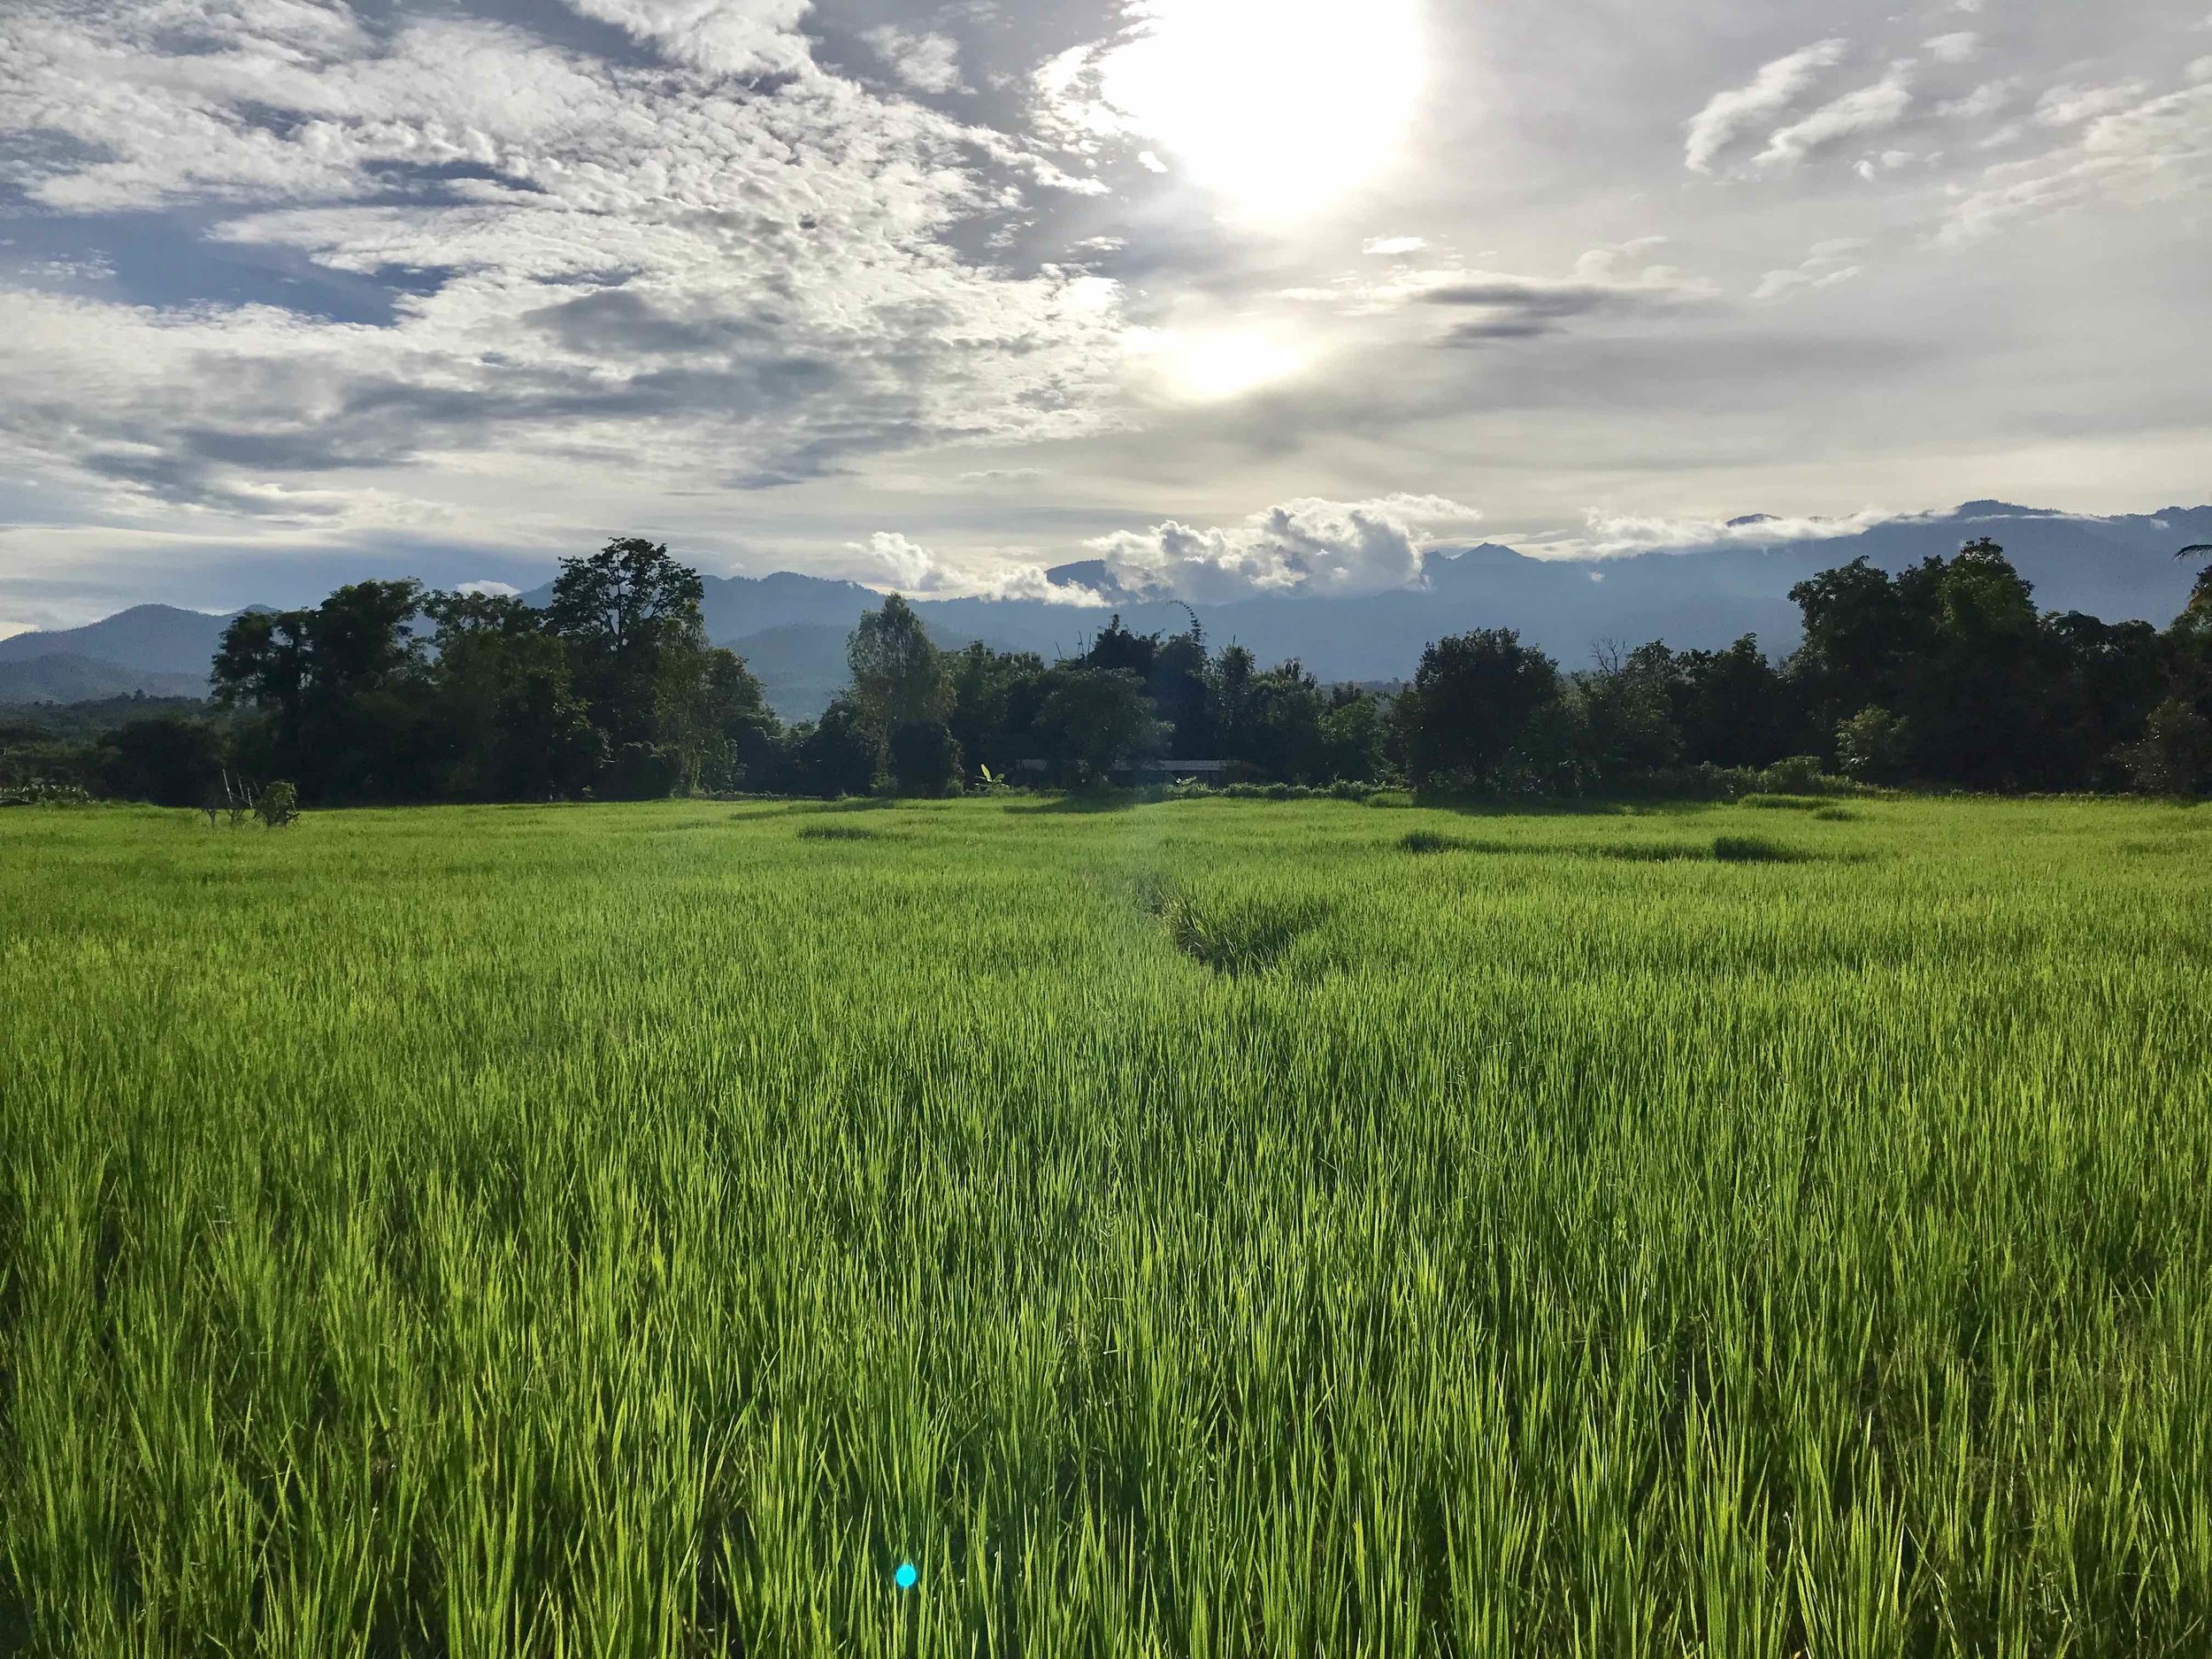  Rice fields in Northeastern Thailand 